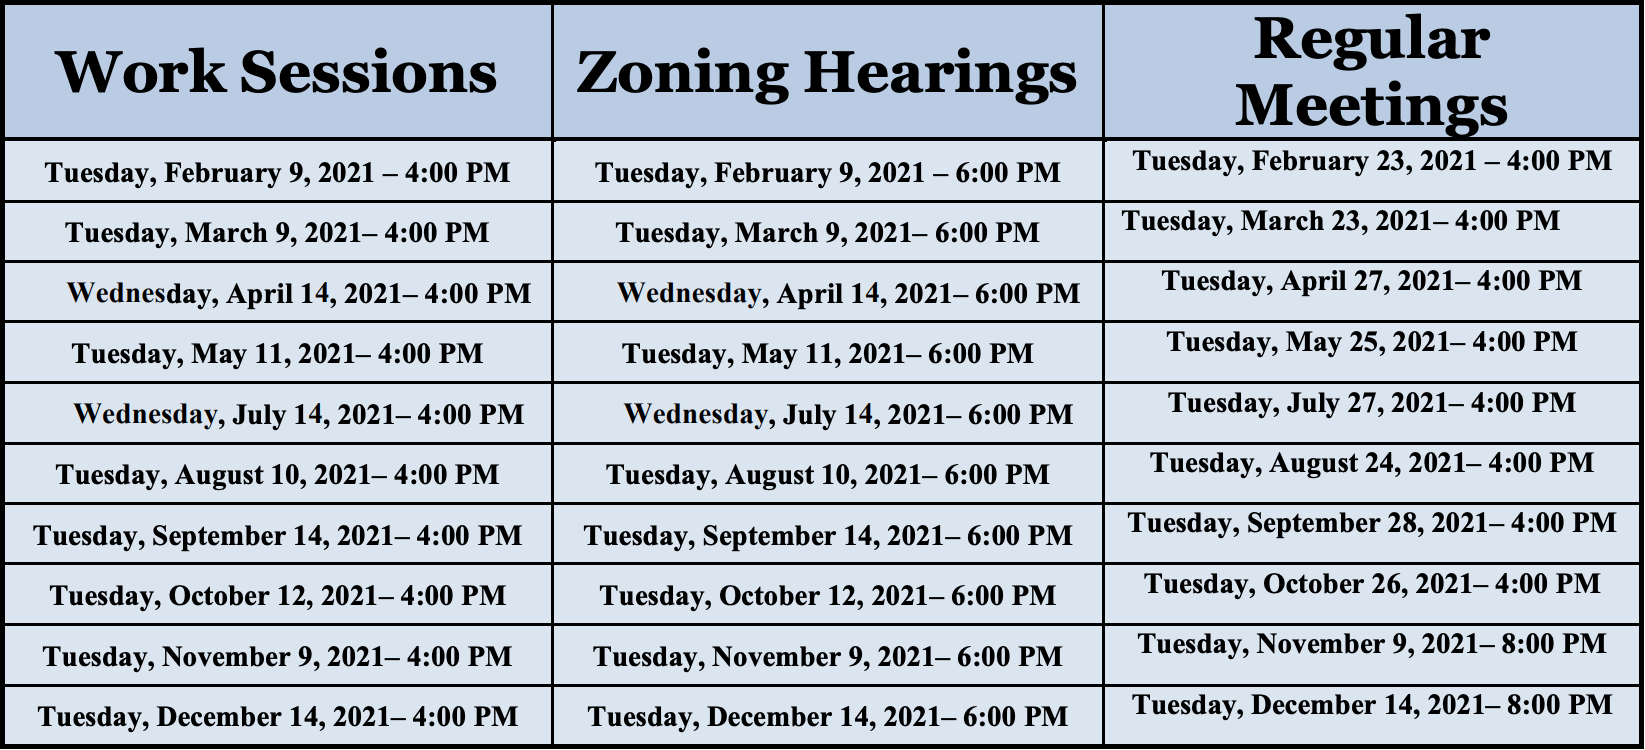 South Fulton's 2021 City Council Meeting Schedule khalidCares.com/News